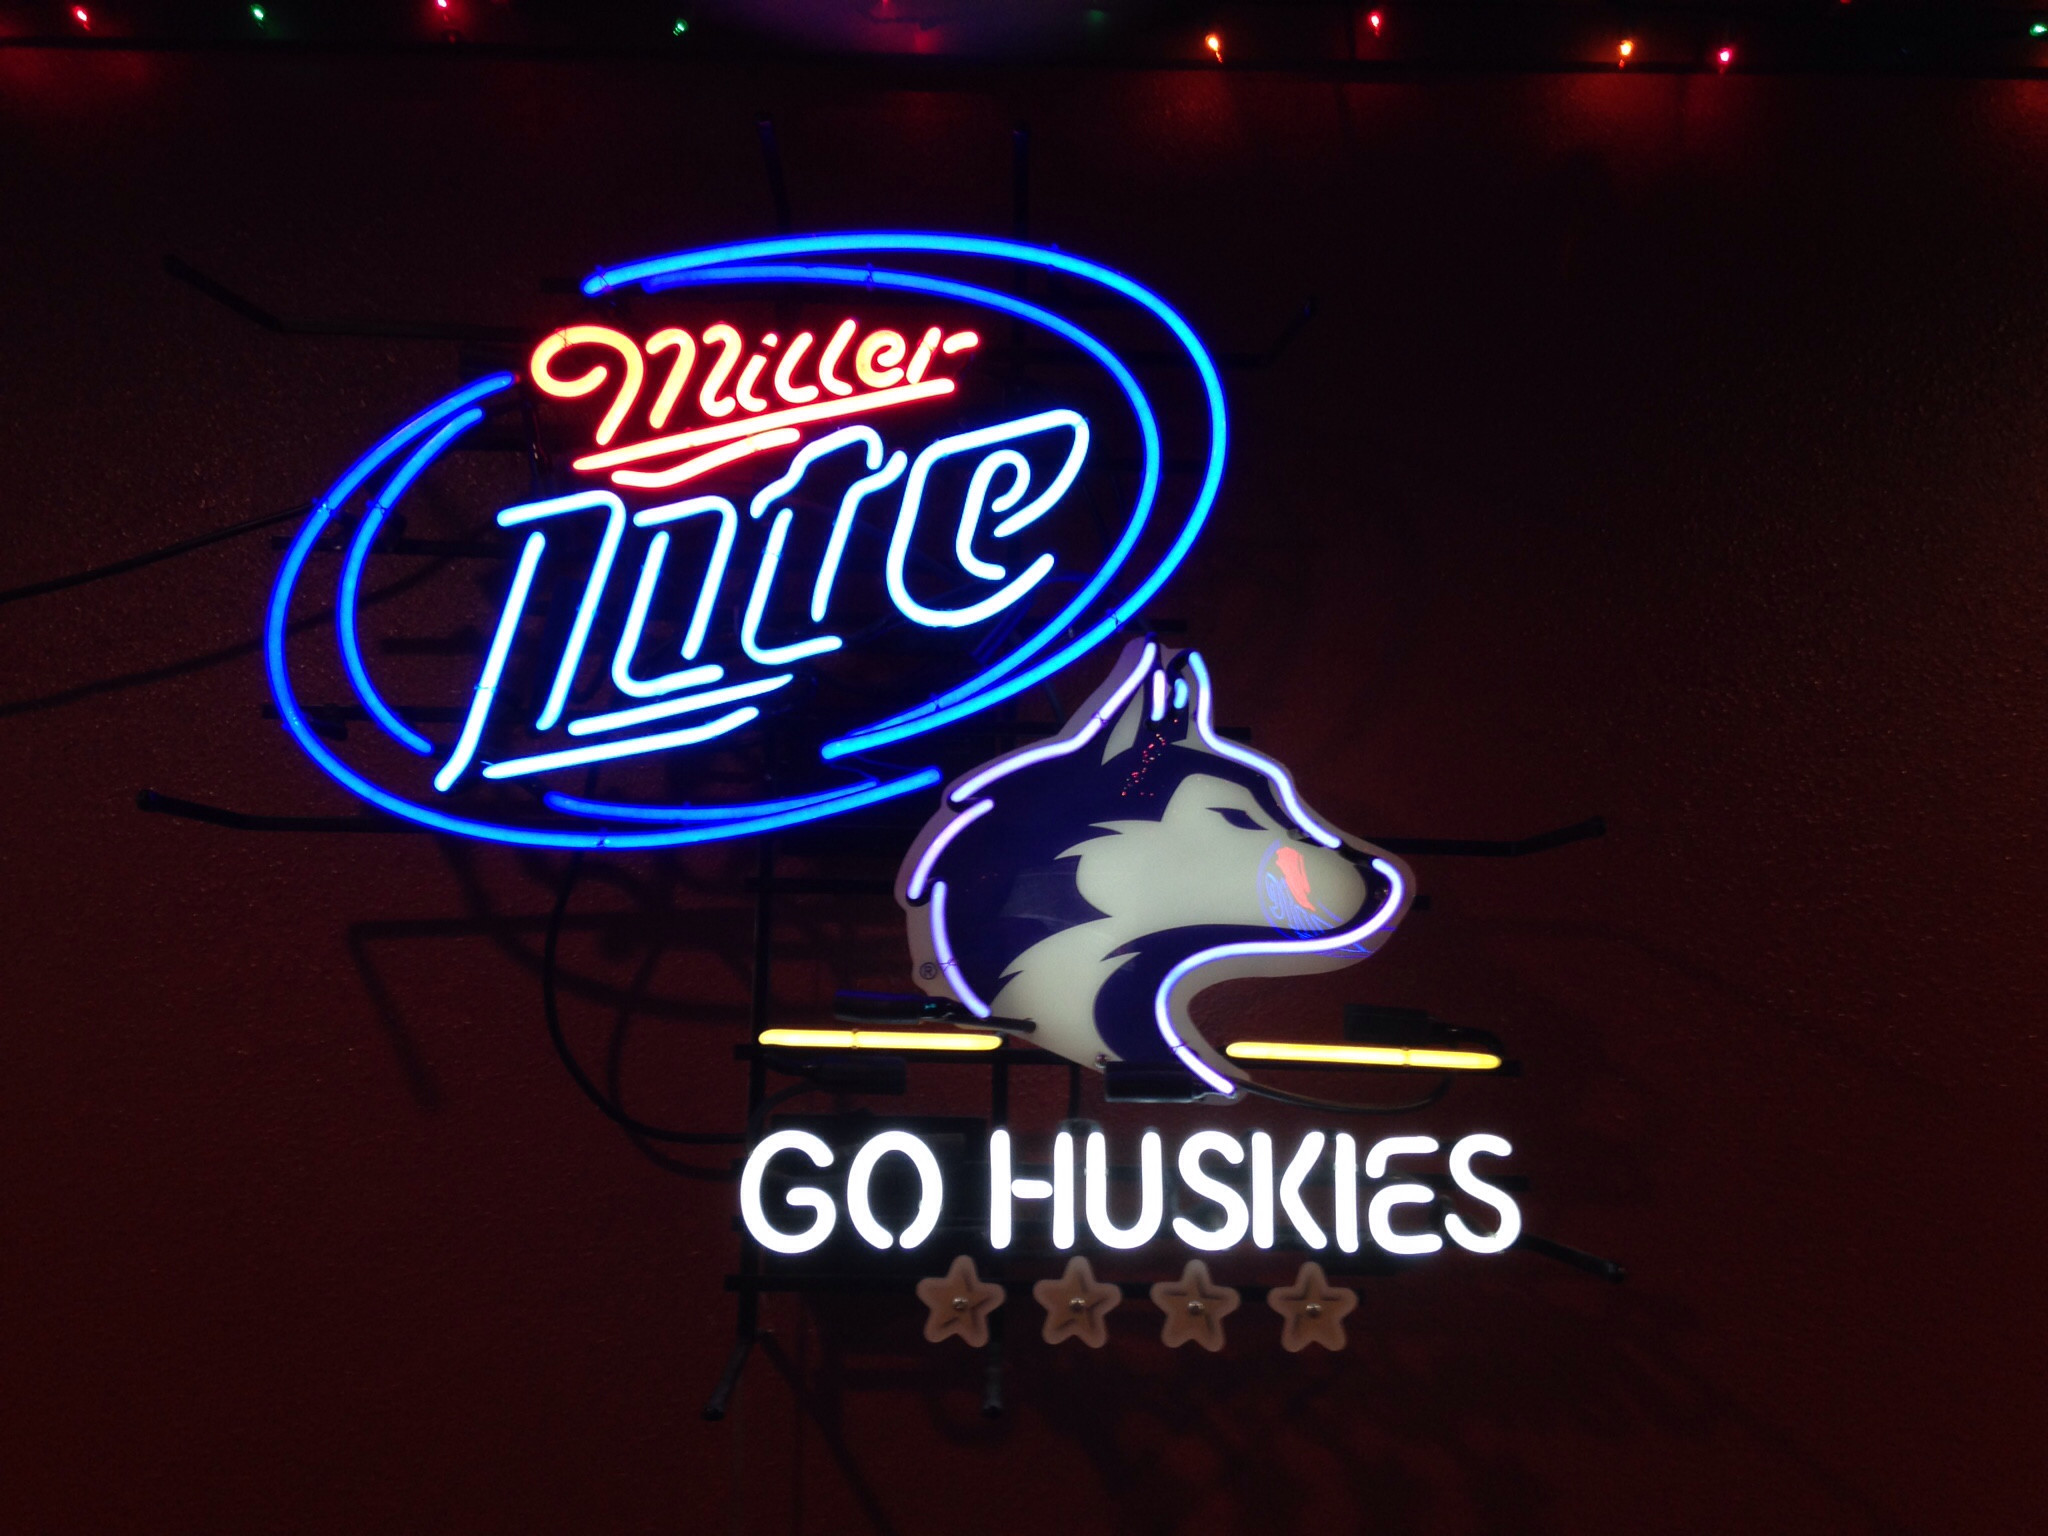 2048x1536 Miller Lite Go Huskies Neon Sign University of Washington NCAA Neon Light